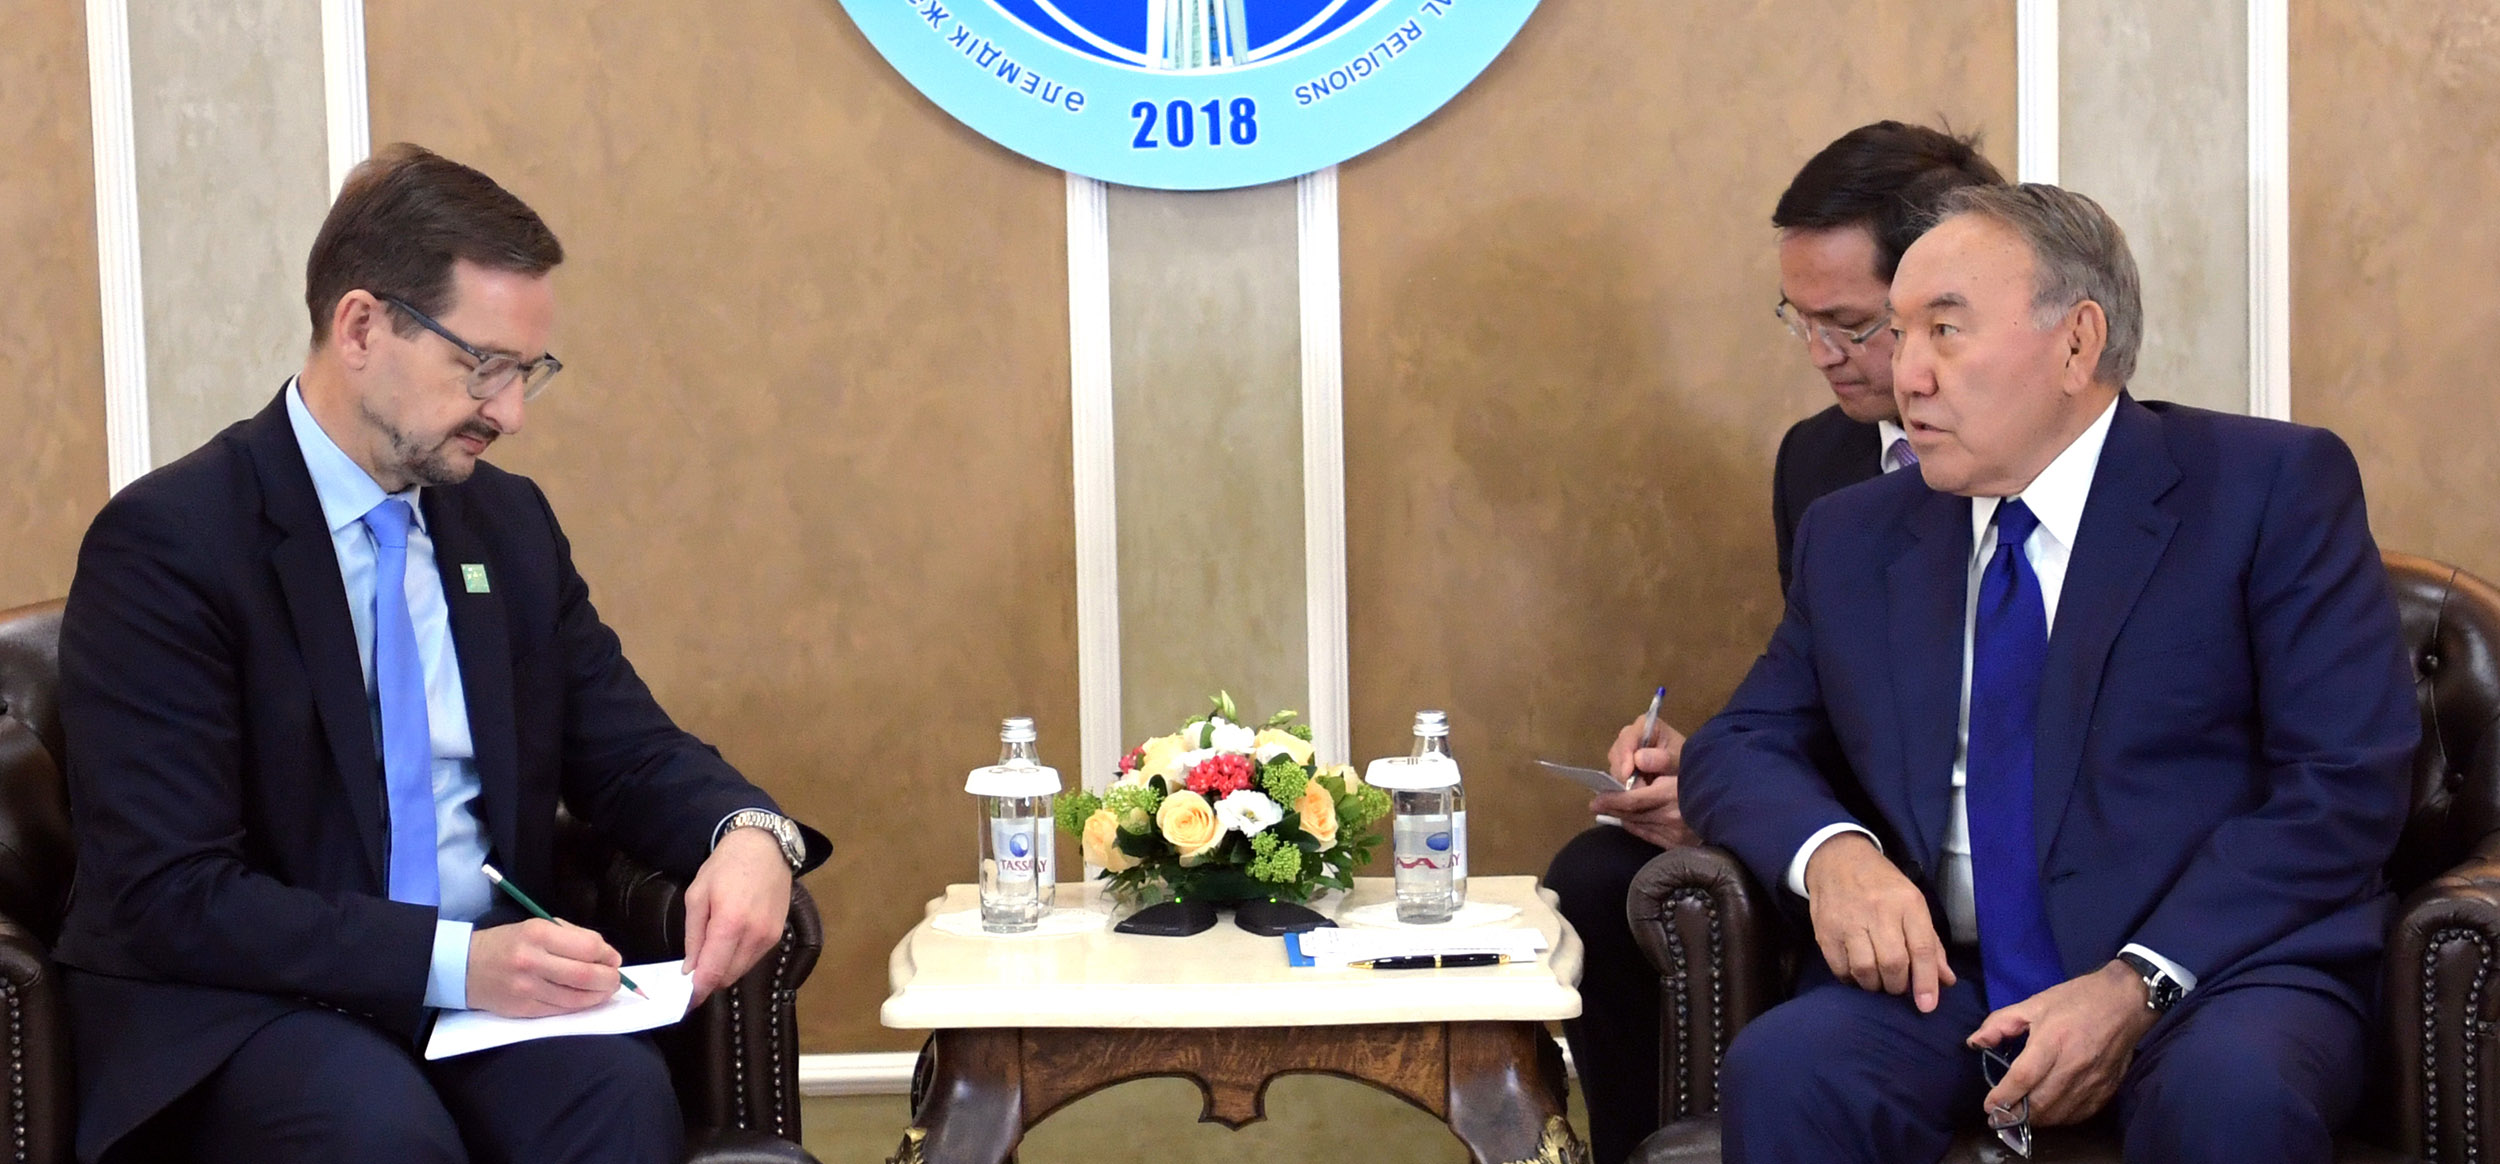 Нұрсұлтан Назарбаев: Біз бұл ұйымның осы ғасырдағы жалғыз саммитін өткіздік